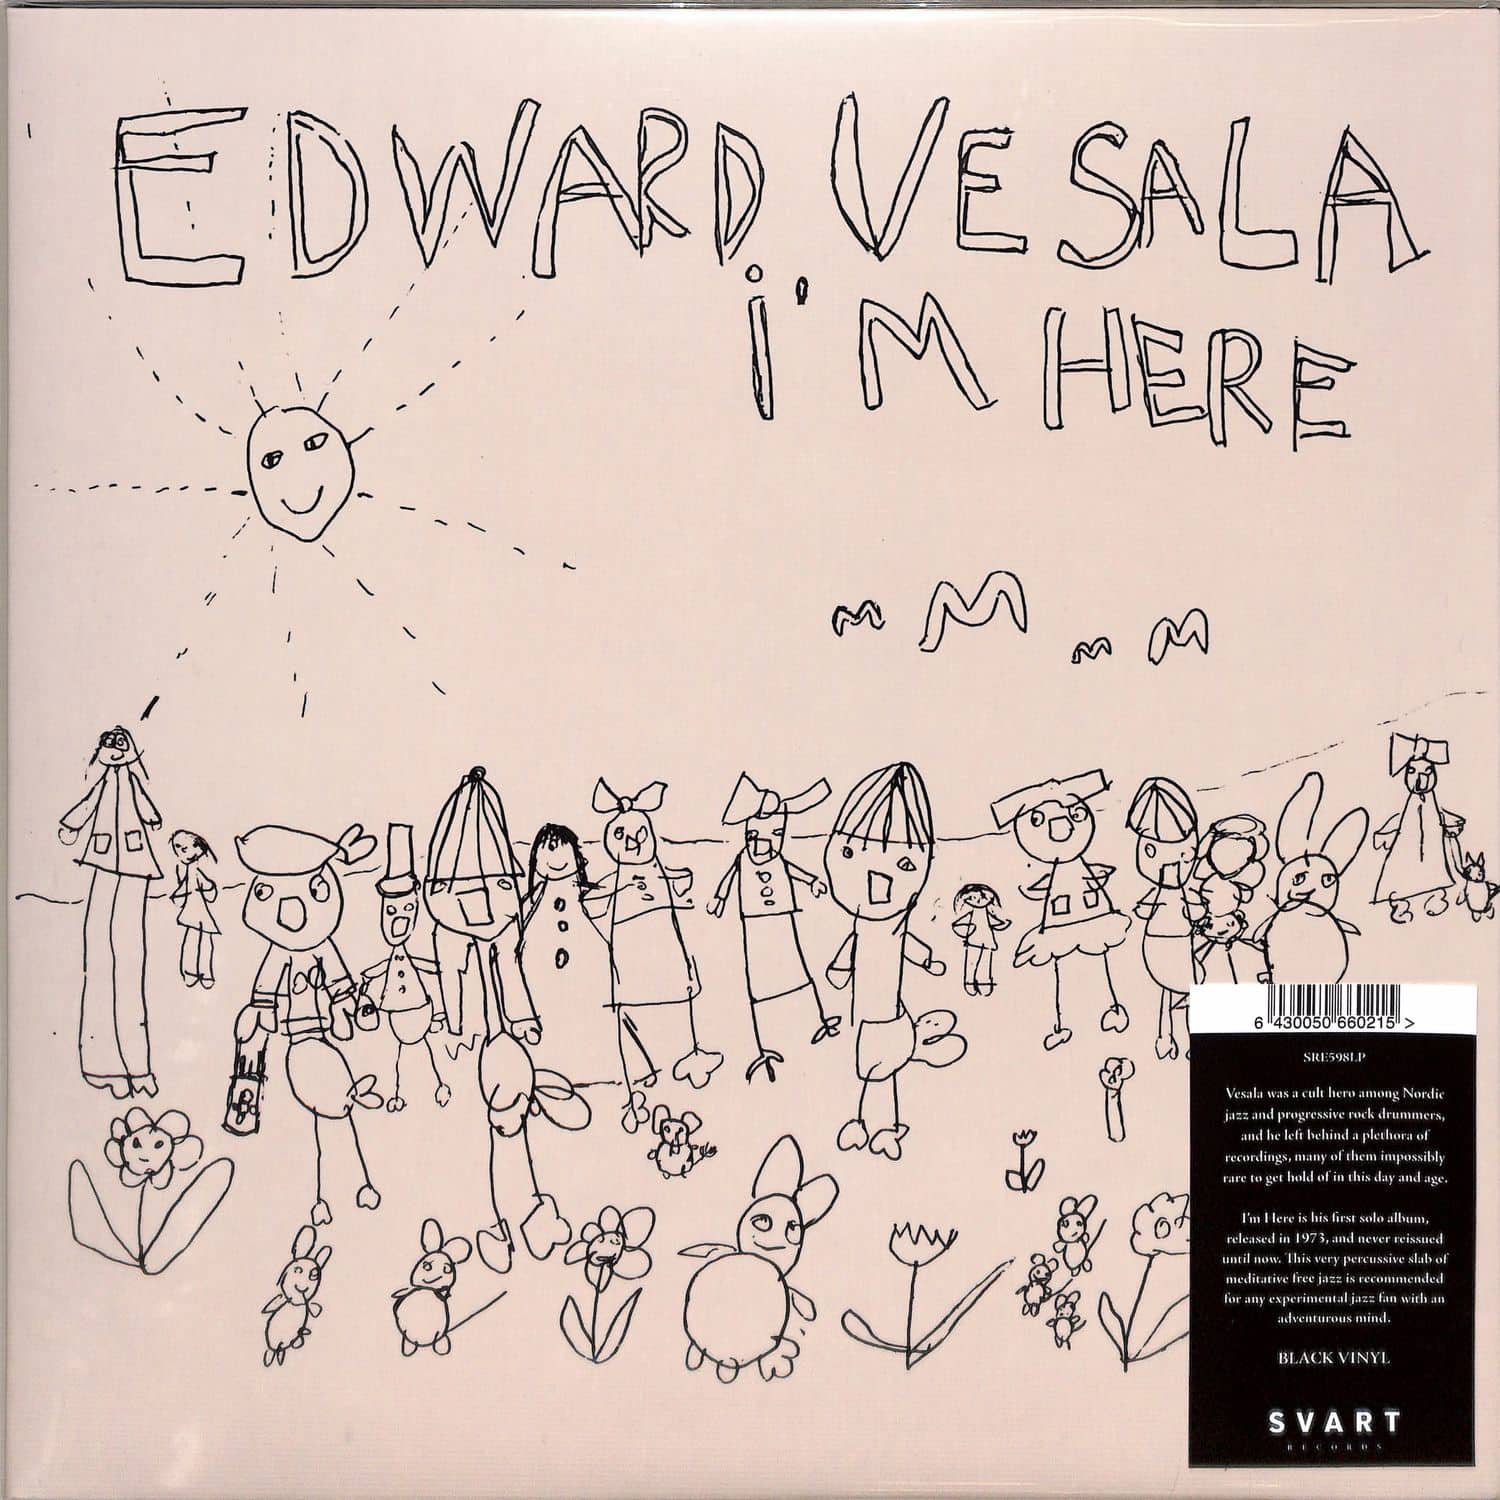 Edward Vesala - I M HERE 